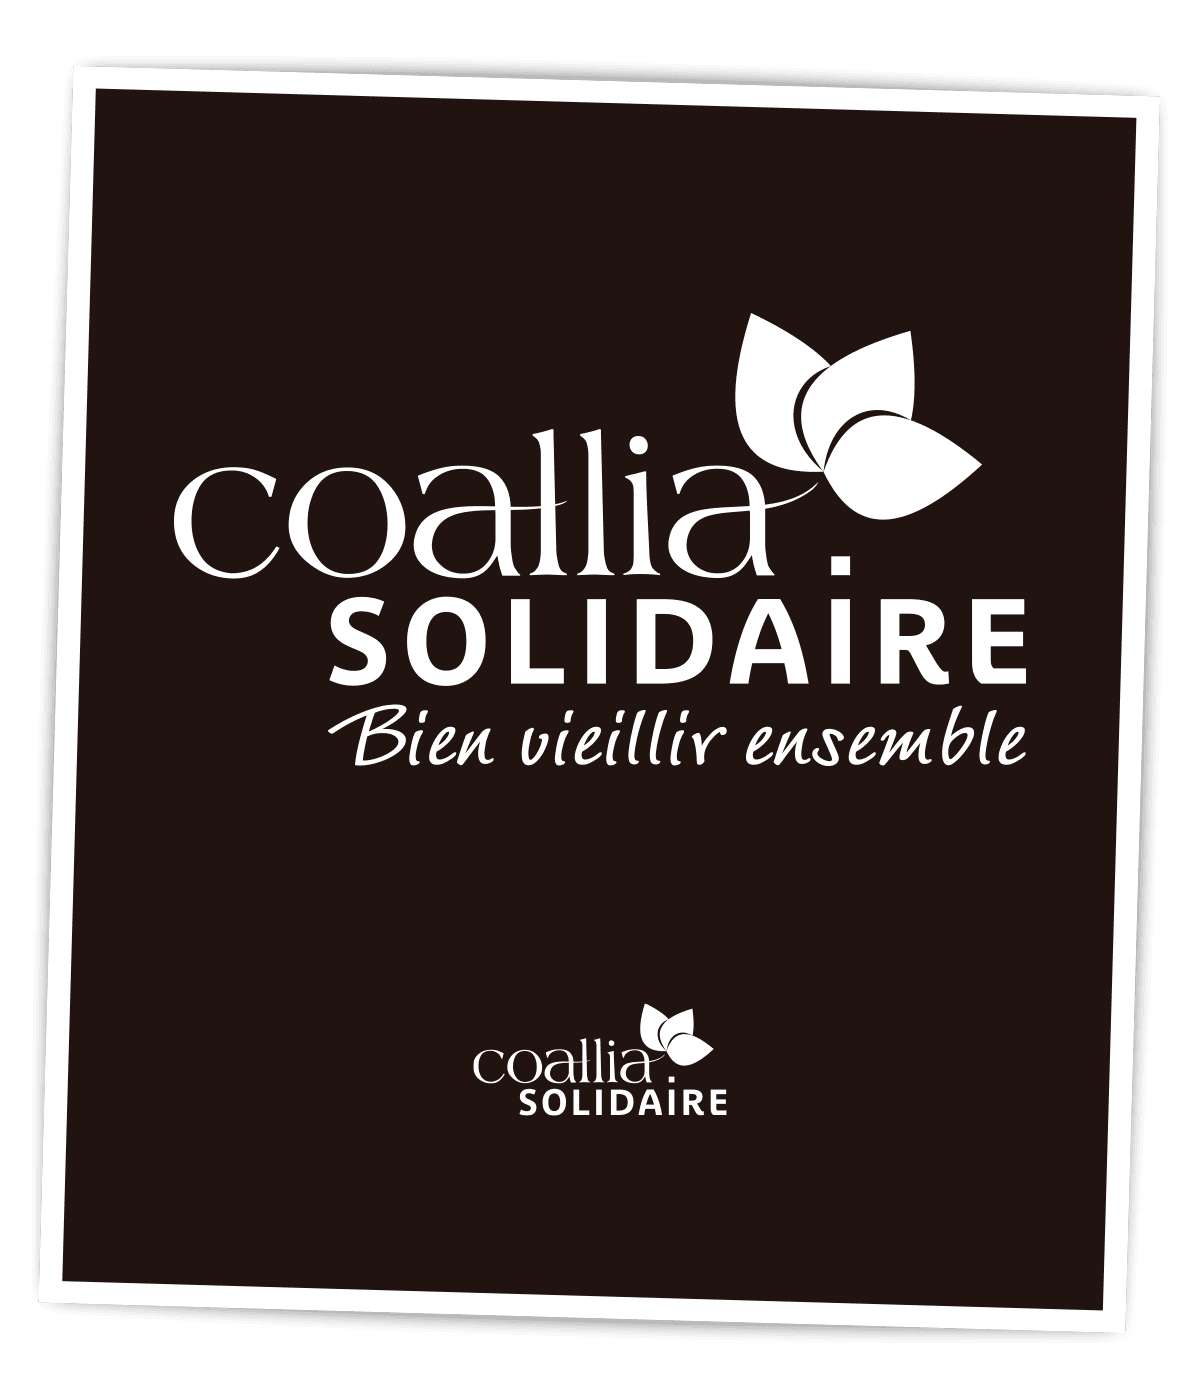 Identité visuelle légère créée pour Coallia Solidaire par Caramel & Paprika - Logo négatif sur fond sombre